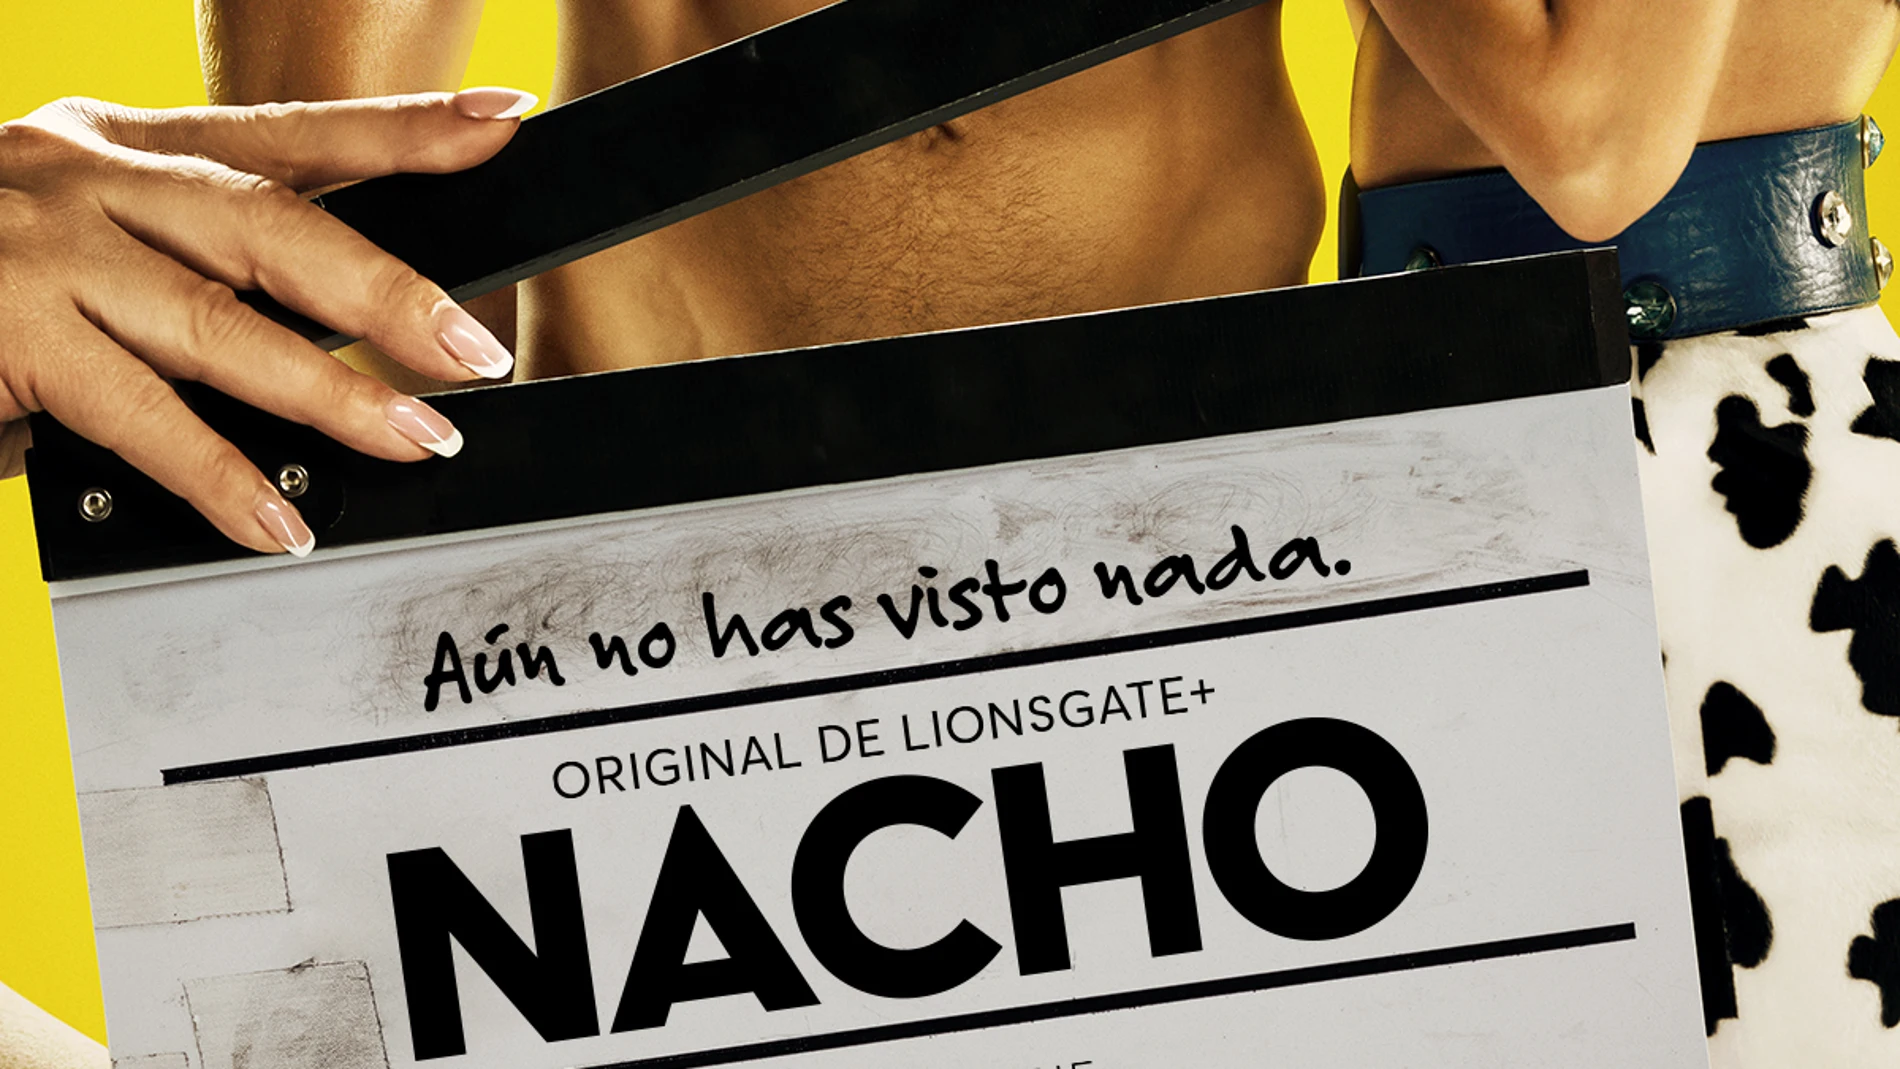 El cartel de "Nacho"